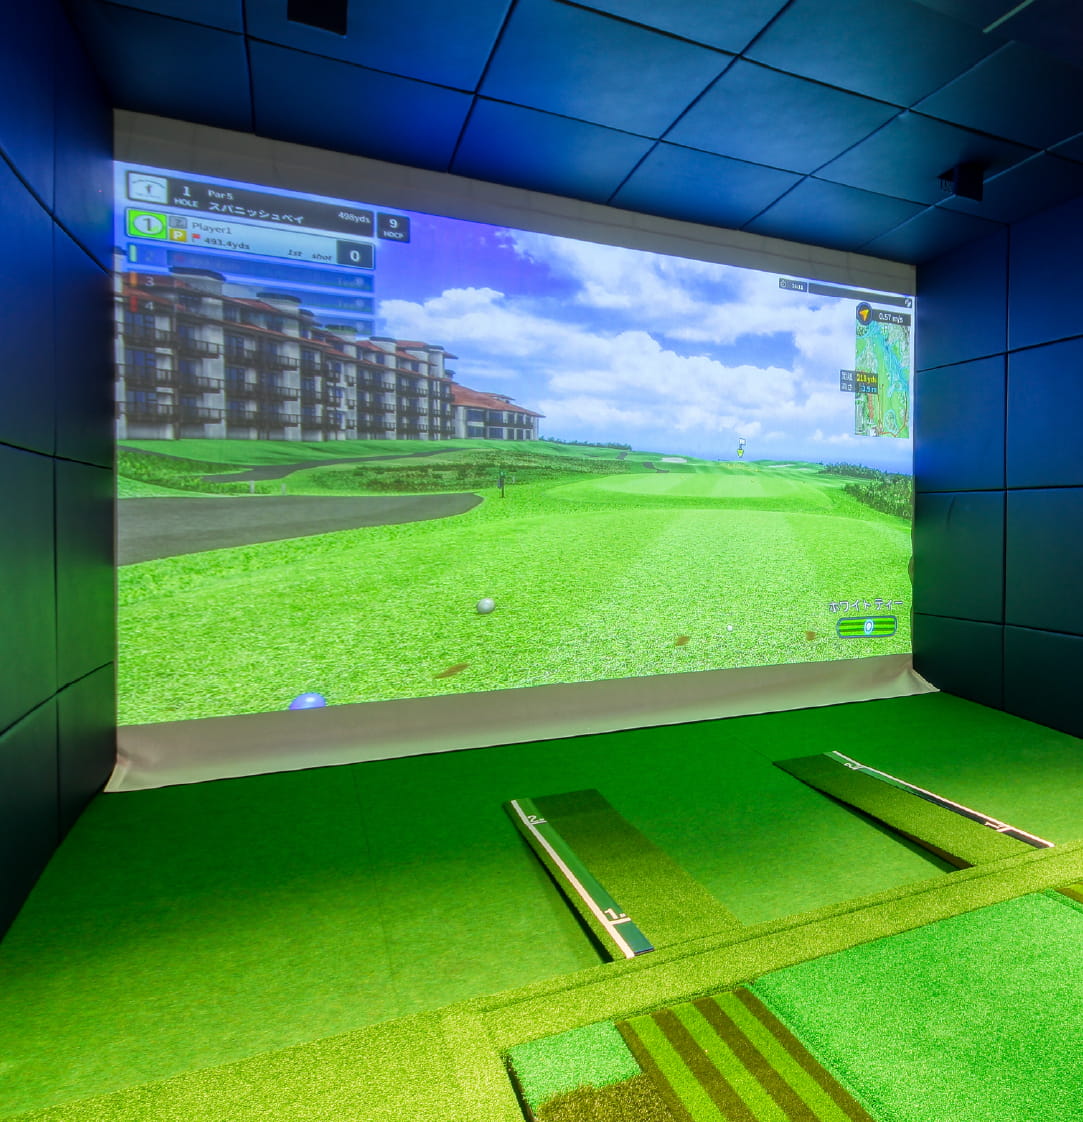 シミュレーションゴルフルーム内の様子